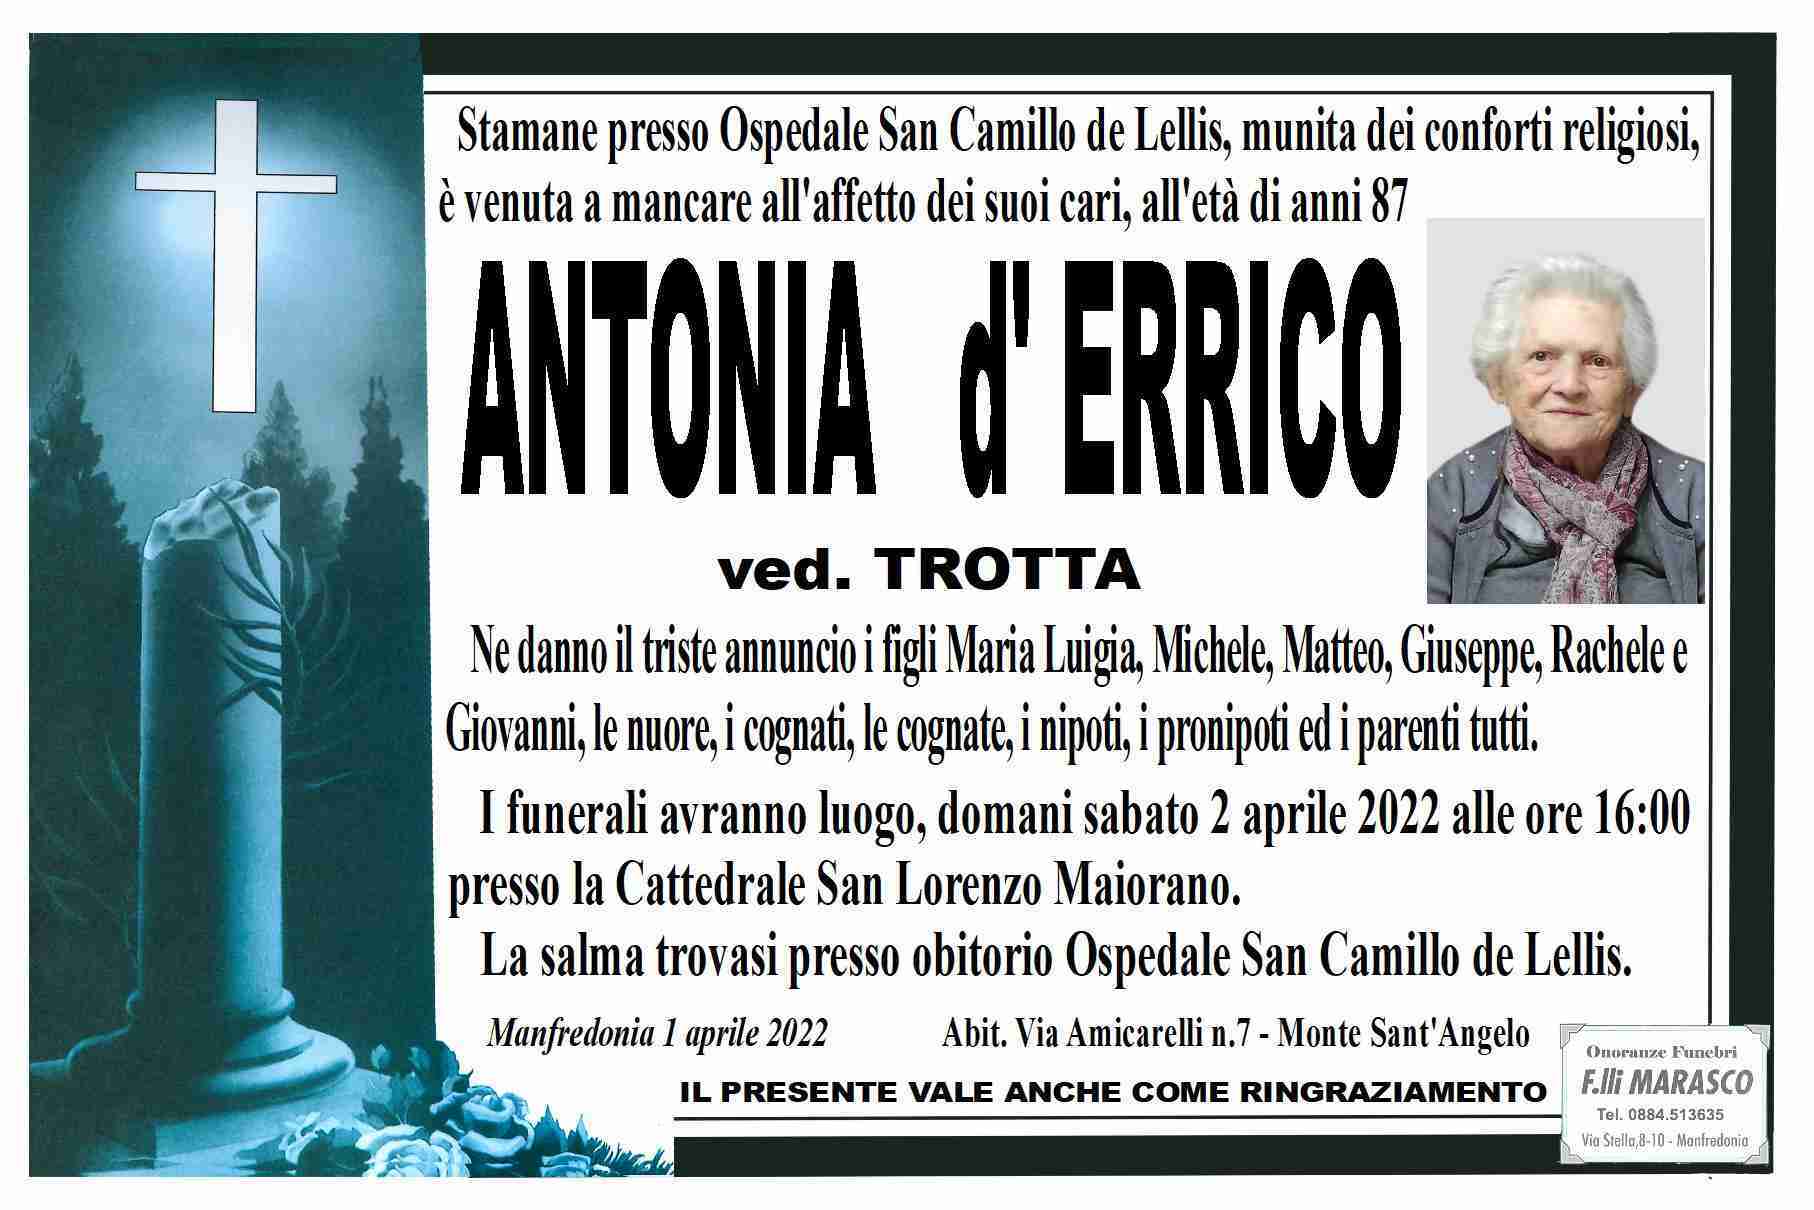 Antonia d'Errico